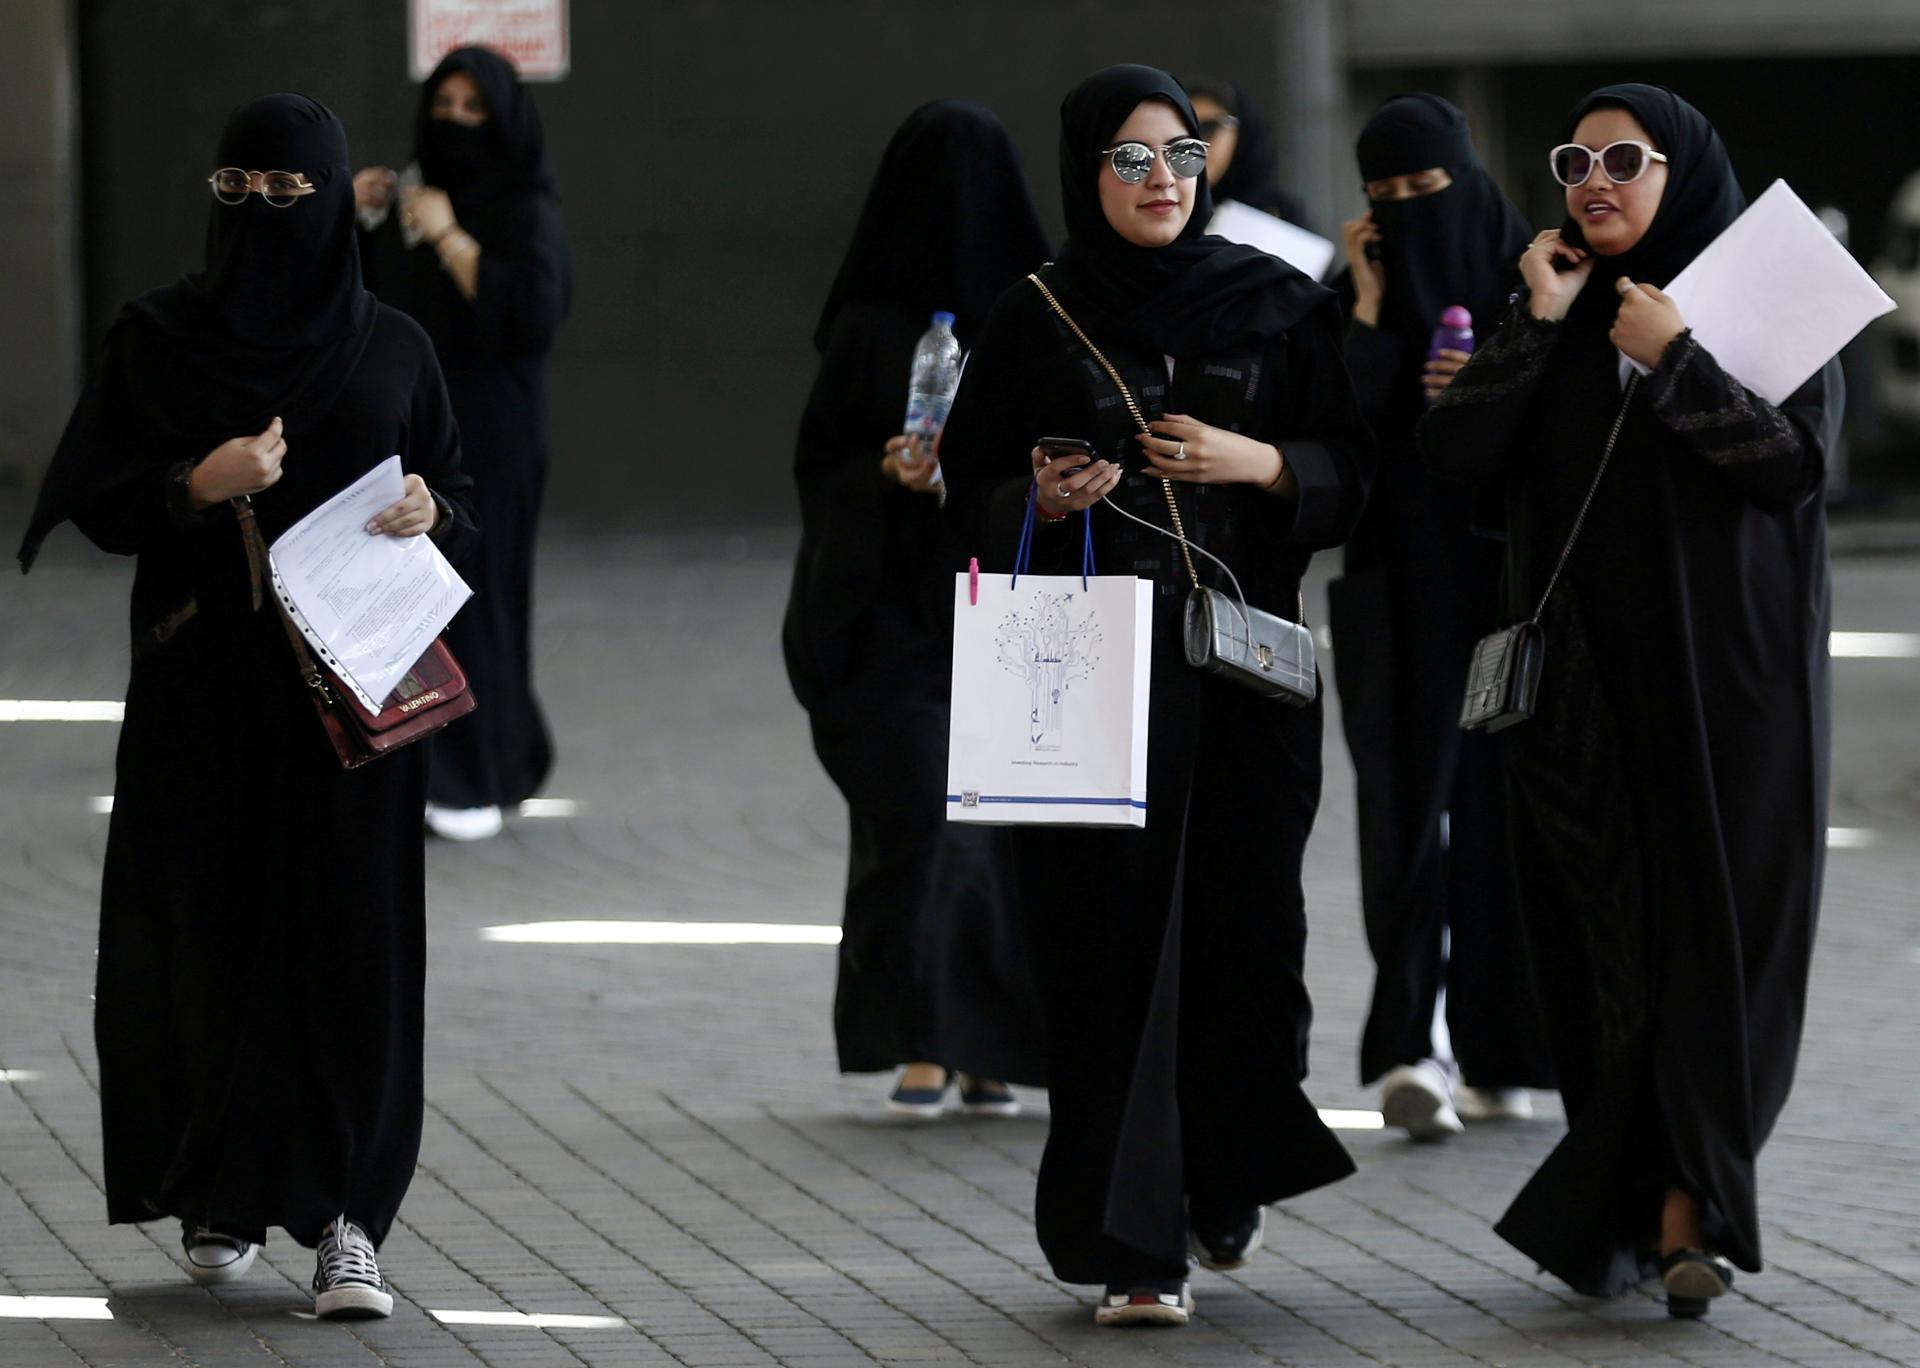 Komisii OSN pre postavenie žien bude predsedať Saudská Arábia, Amnesty International je voľbou šokovaná